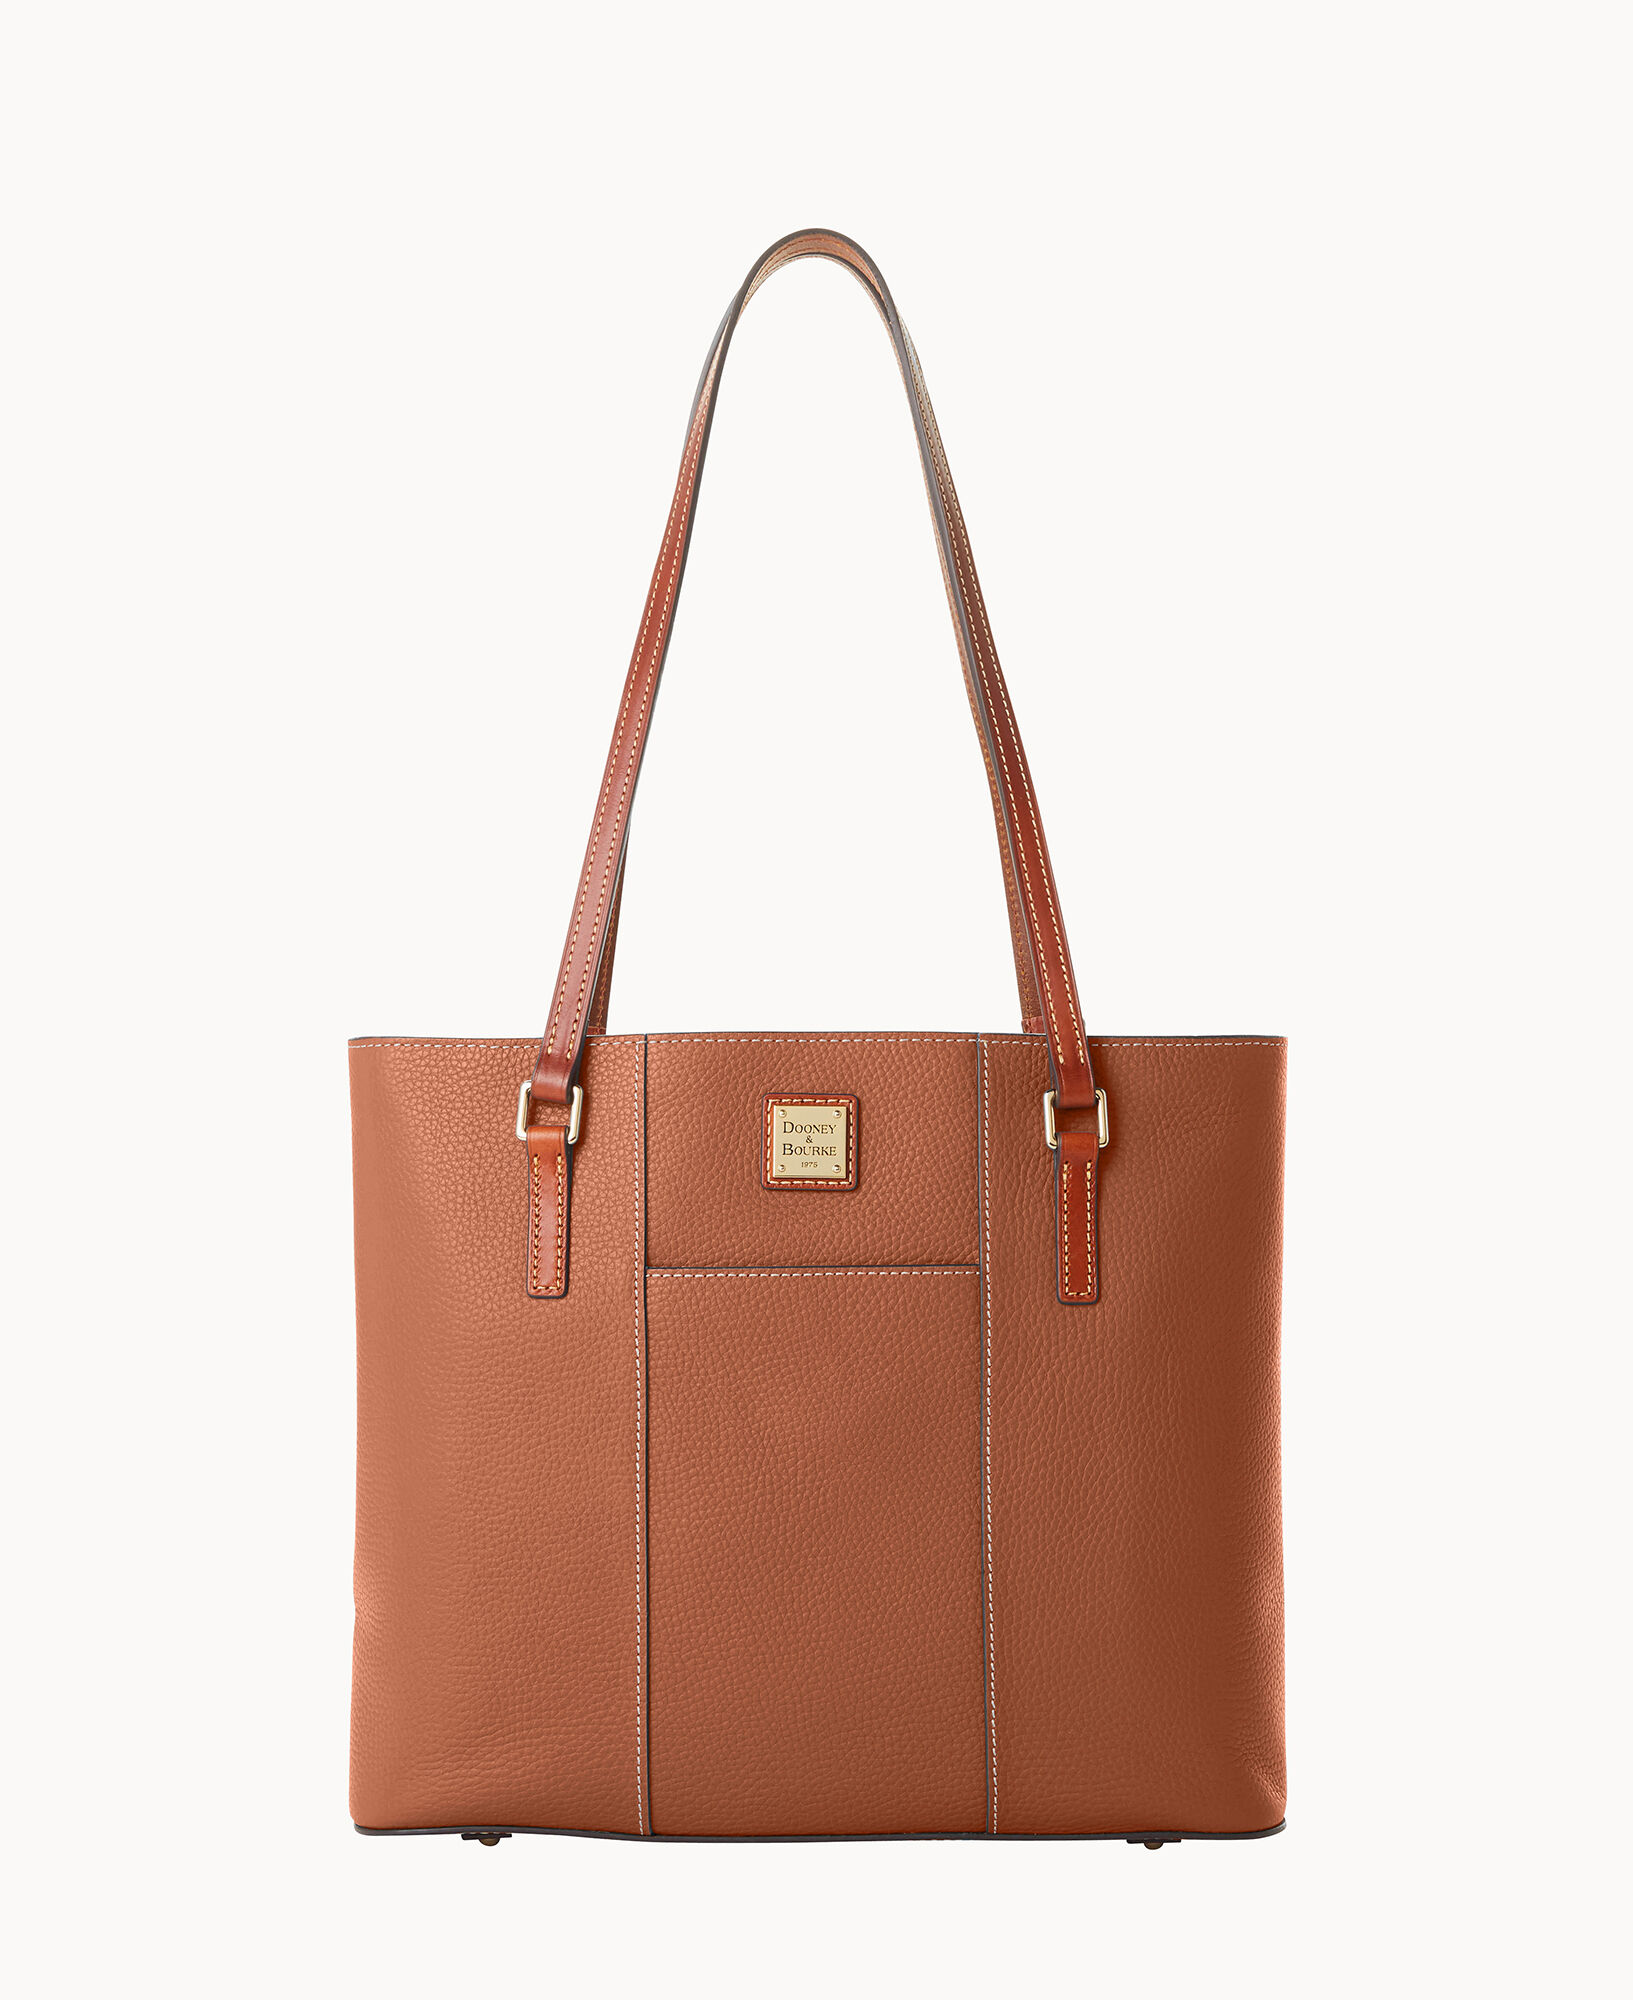 Dooney & Bourke Women's Bag - Brown